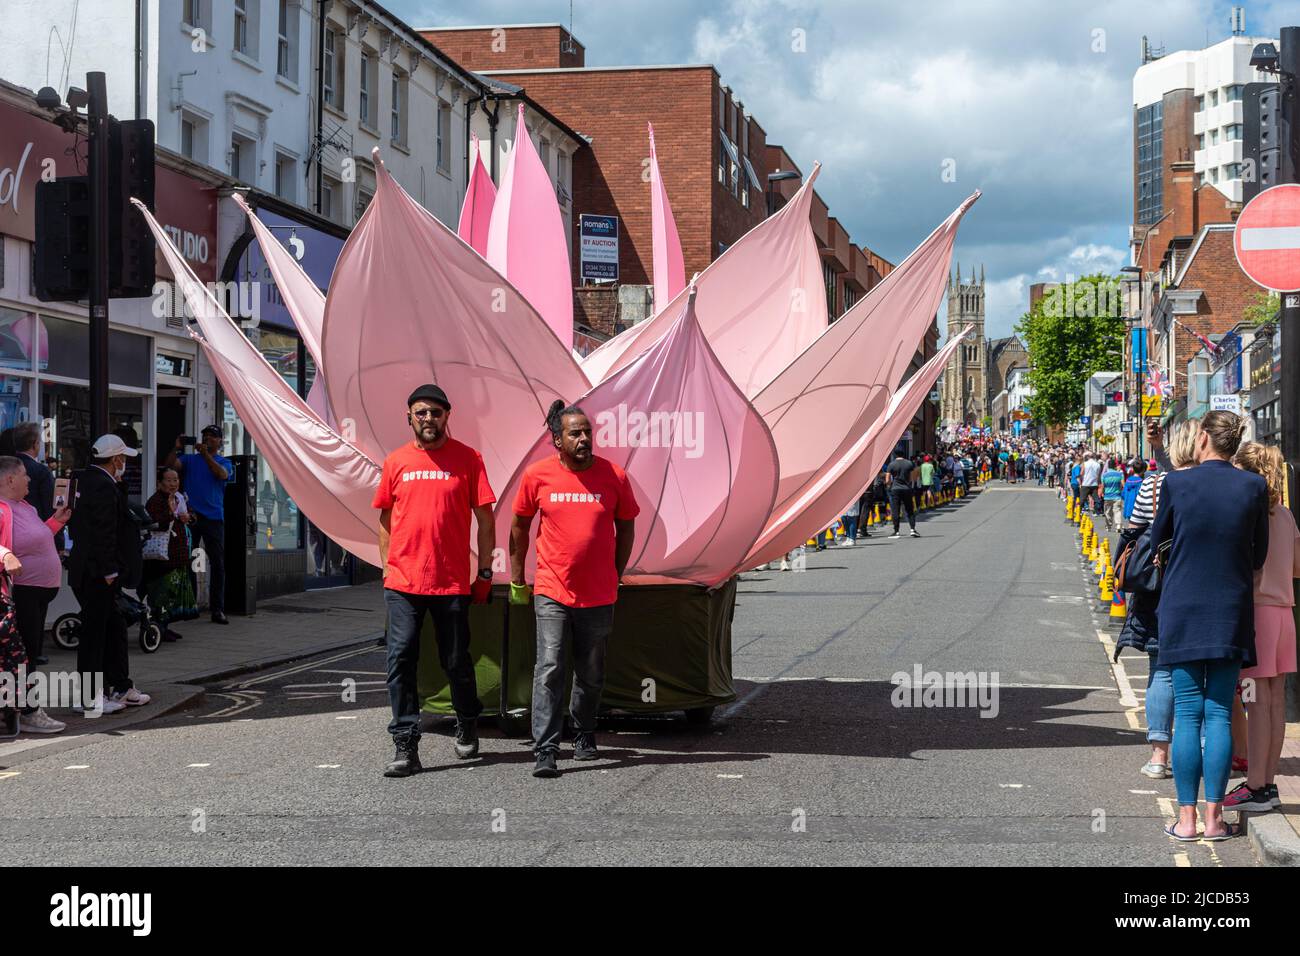 Die Grand Parade am Victoria Day, eine jährliche Veranstaltung in Aldershot, Hampshire, England, Großbritannien. Nutkhut Performance-Künstler mit einer riesigen Lotusblume Stockfoto